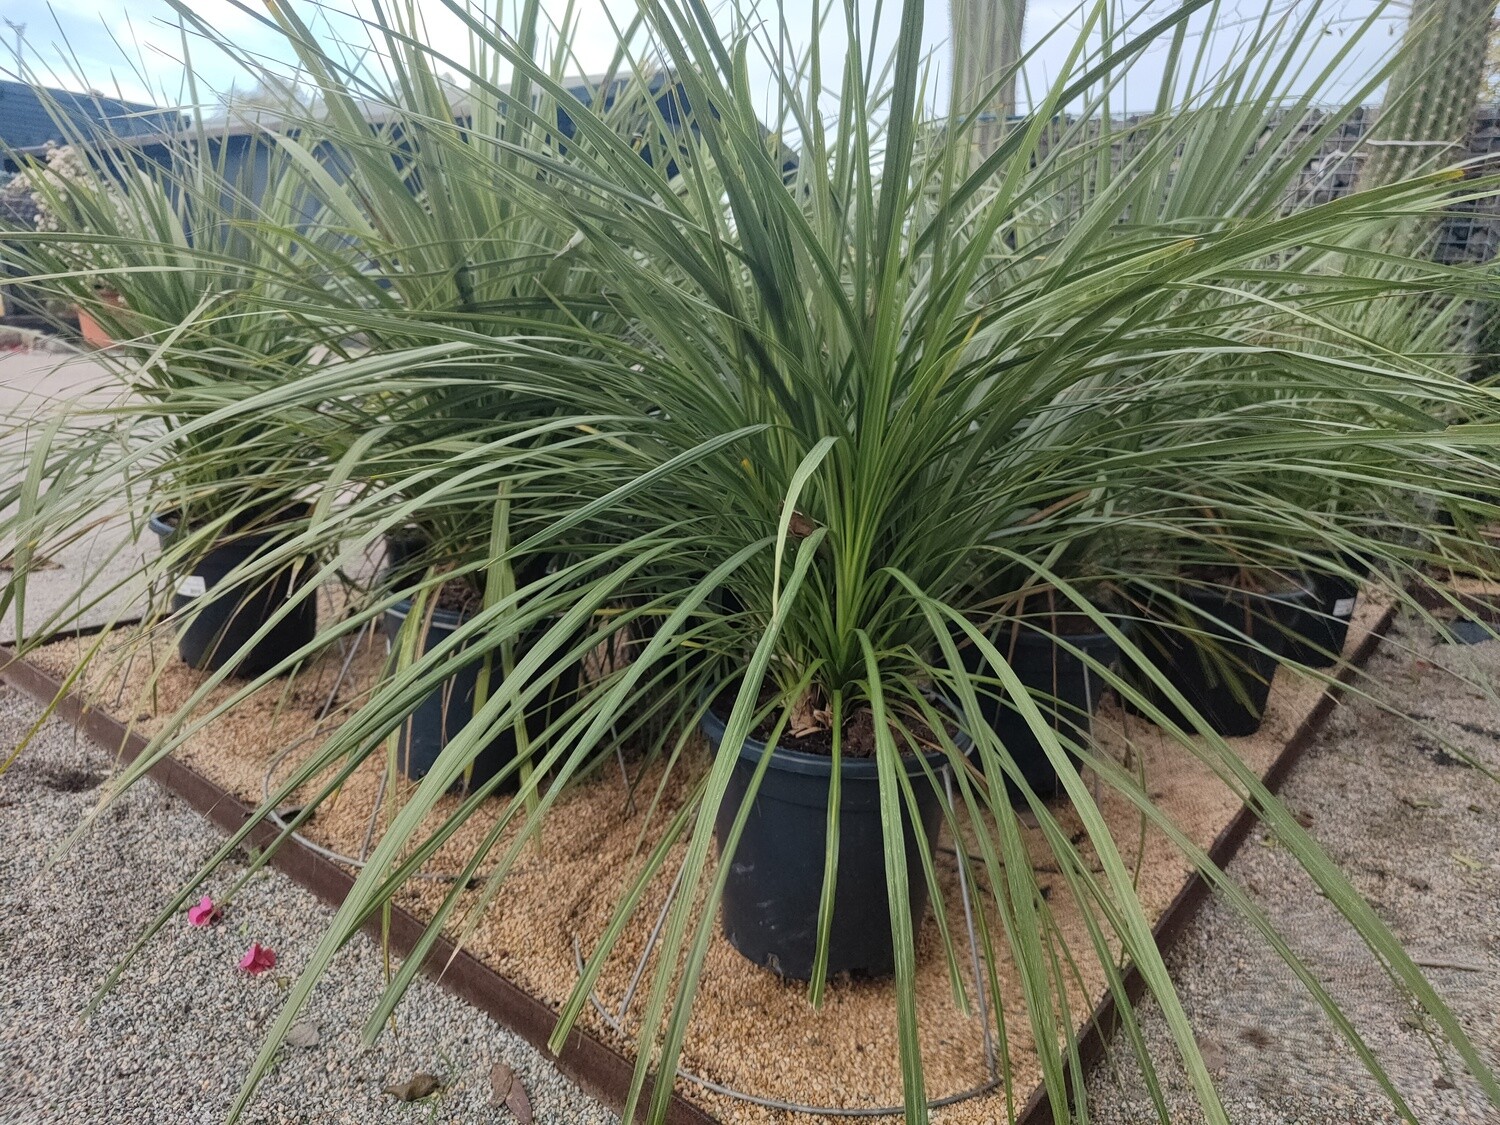 "AmaPlant Cordyline Australis Grup" pequeño arbolito con aspecto de palmera ideal para espacios verdes 90-100 cm M40 25 L (maori) - Interior o exterior a pleno sol o semisombra - ENVIO INCLUIDO